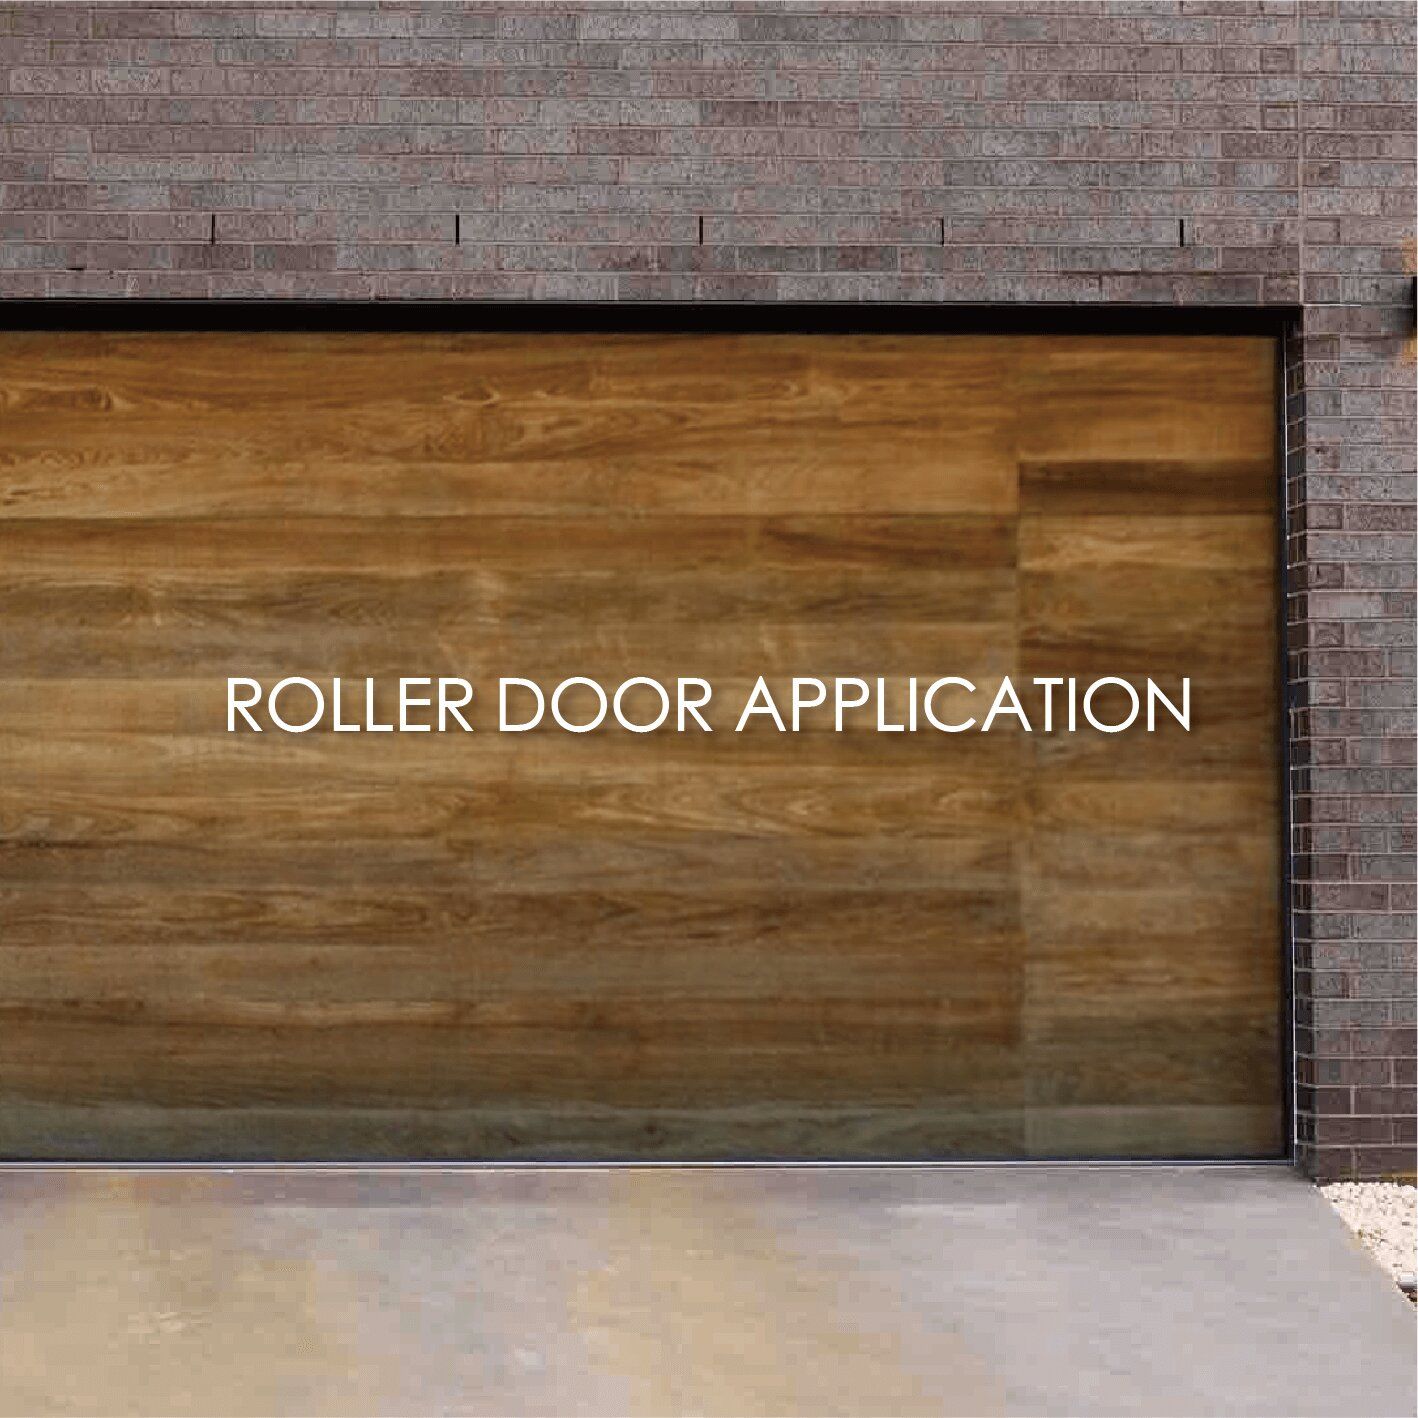 選用木紋覆膜金屬裝飾車庫捲門能增加美觀性和耐用性